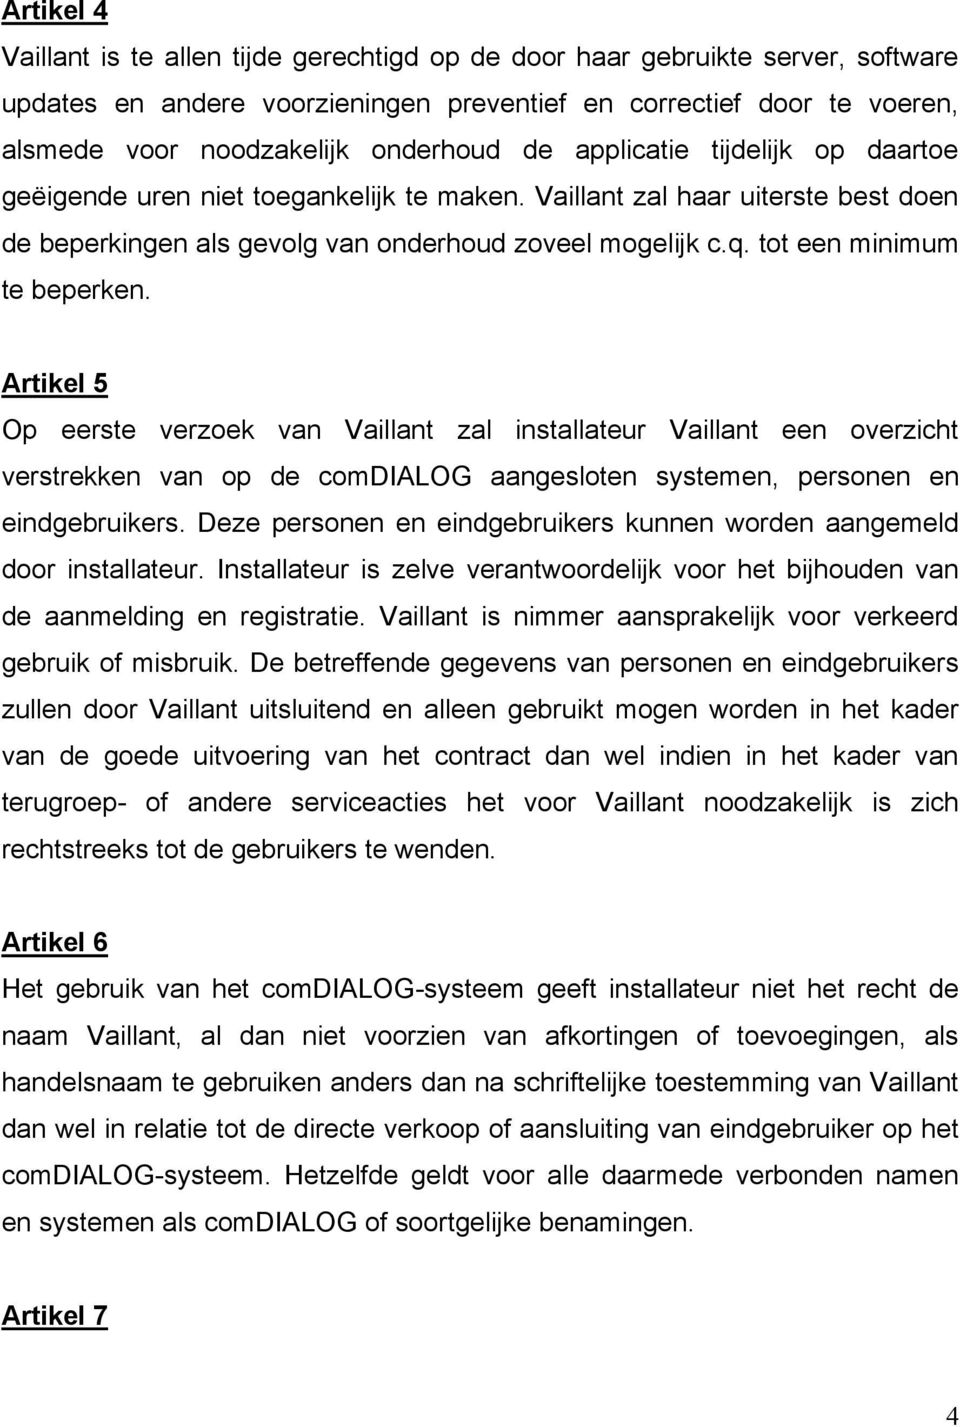 tot een minimum te beperken. Artikel 5 Op eerste verzoek van Vaillant zal installateur Vaillant een overzicht verstrekken van op de comdialog aangesloten systemen, personen en eindgebruikers.